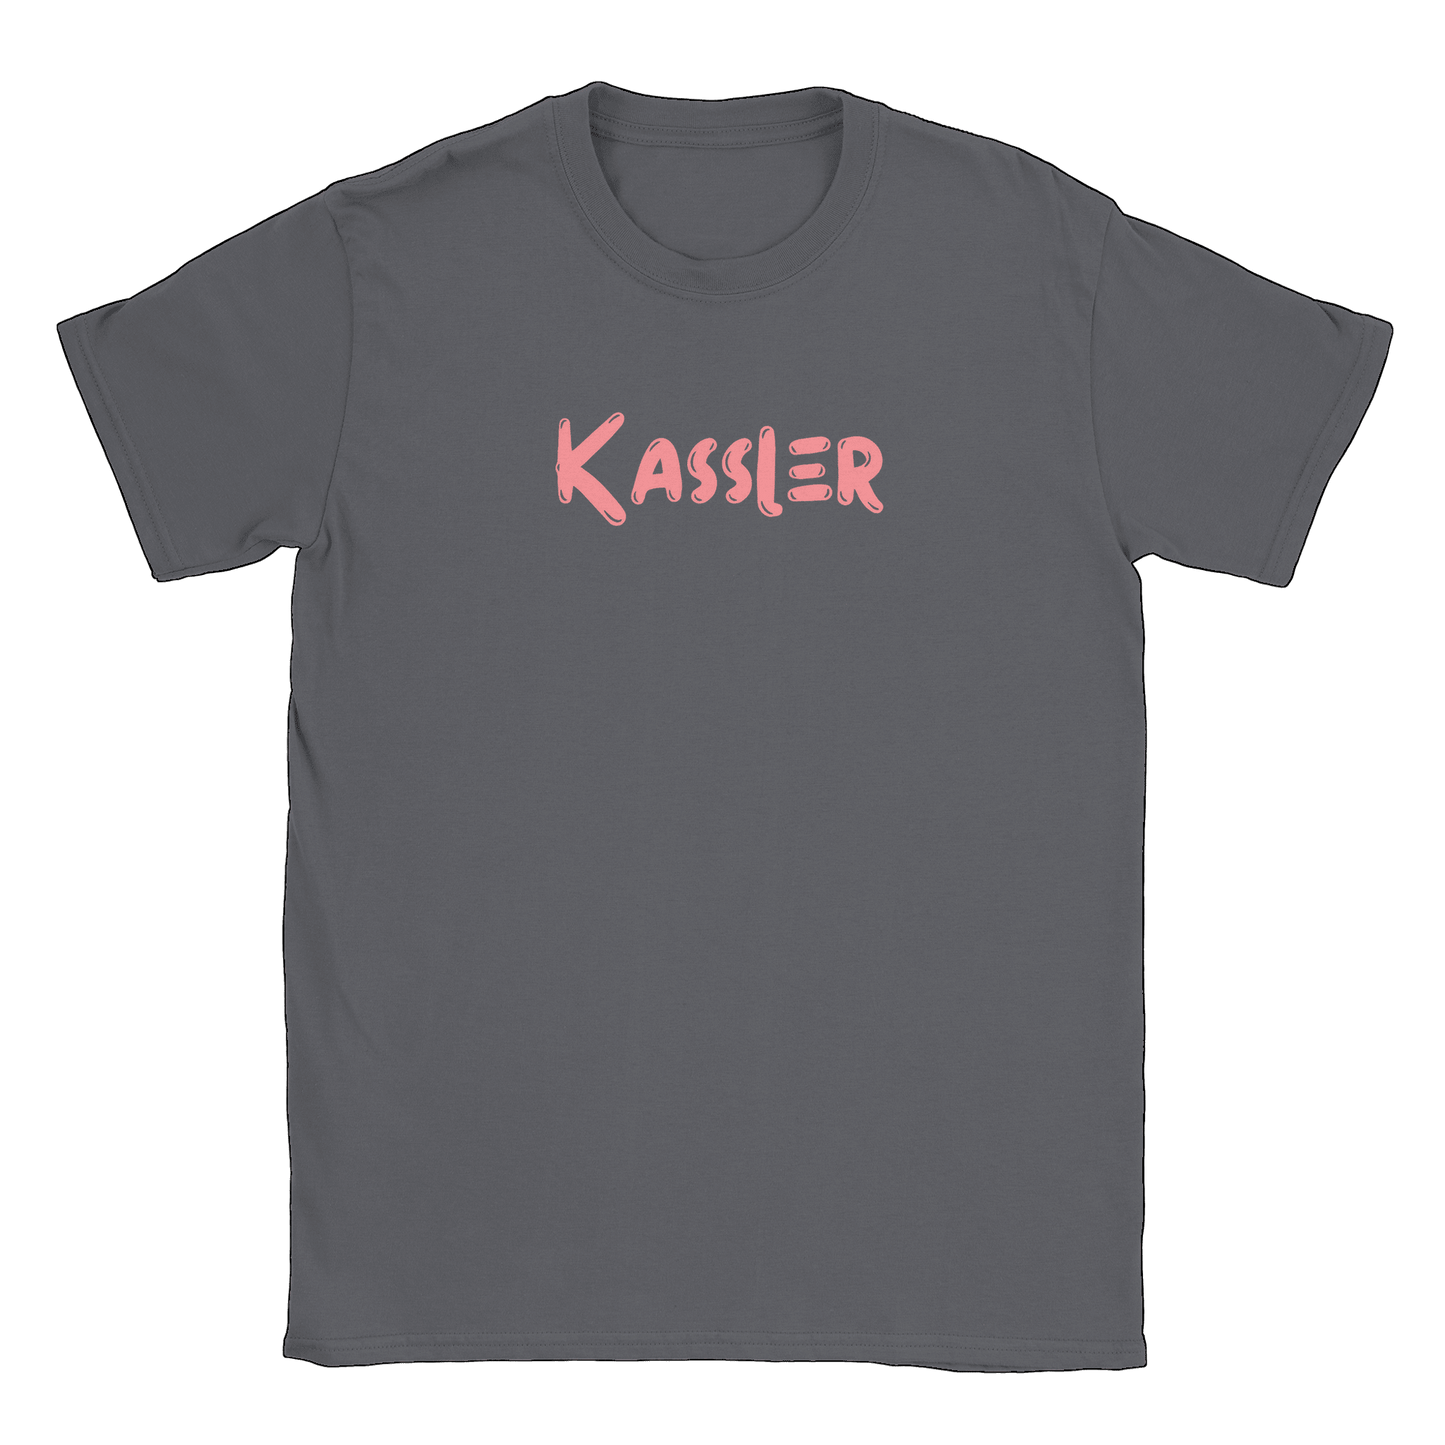 Kassler - T-shirt Charcoal